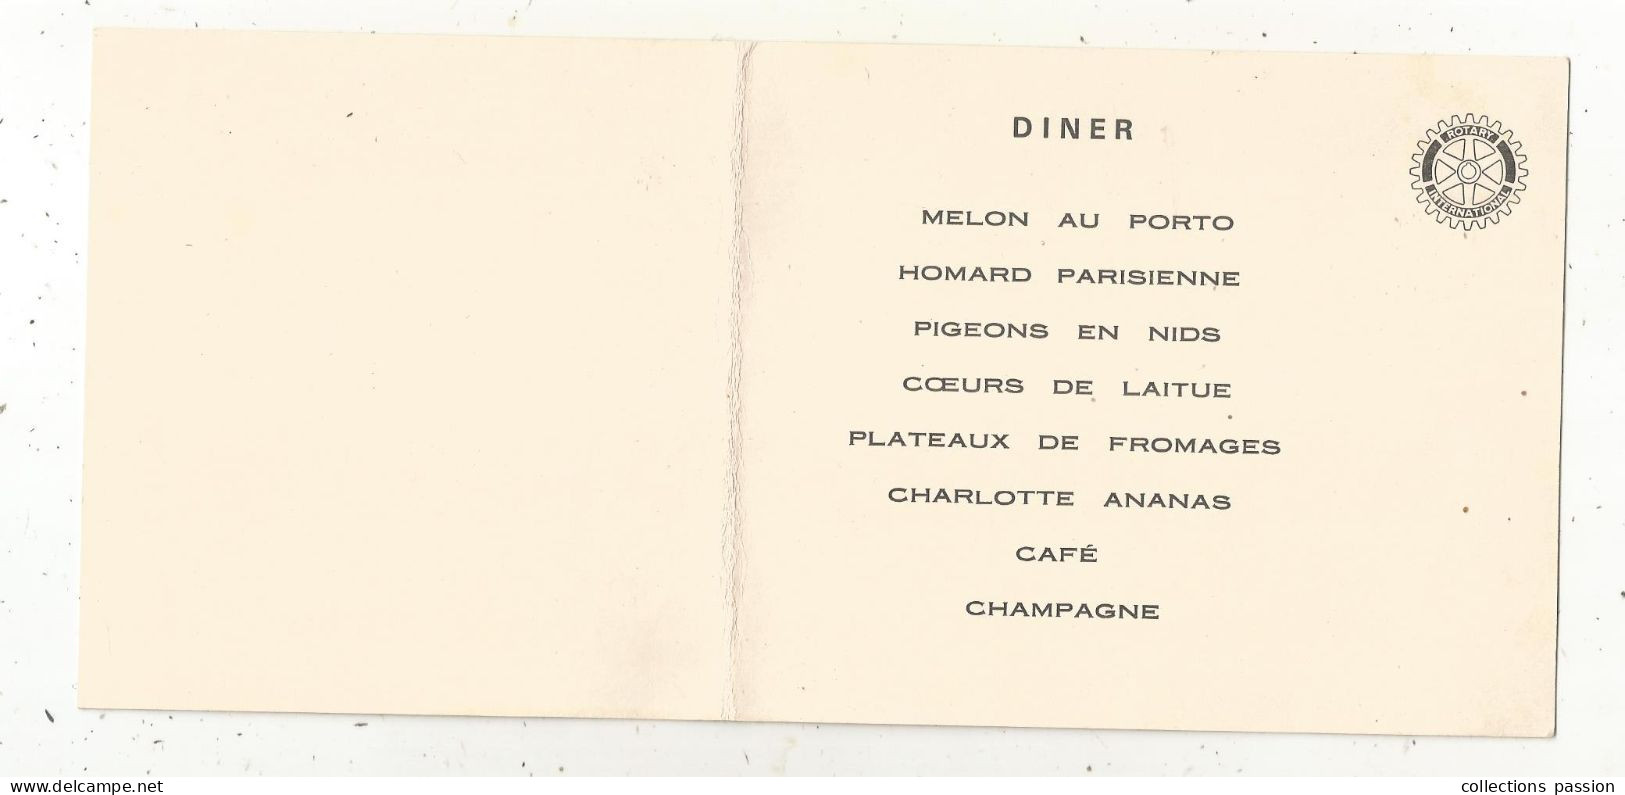 Menu , Remise De Chartre Du ROTARY-CLUB De BRESSUIRE, 1968, Hôtel Du Cheval Blanc, CERIZAY - Menus